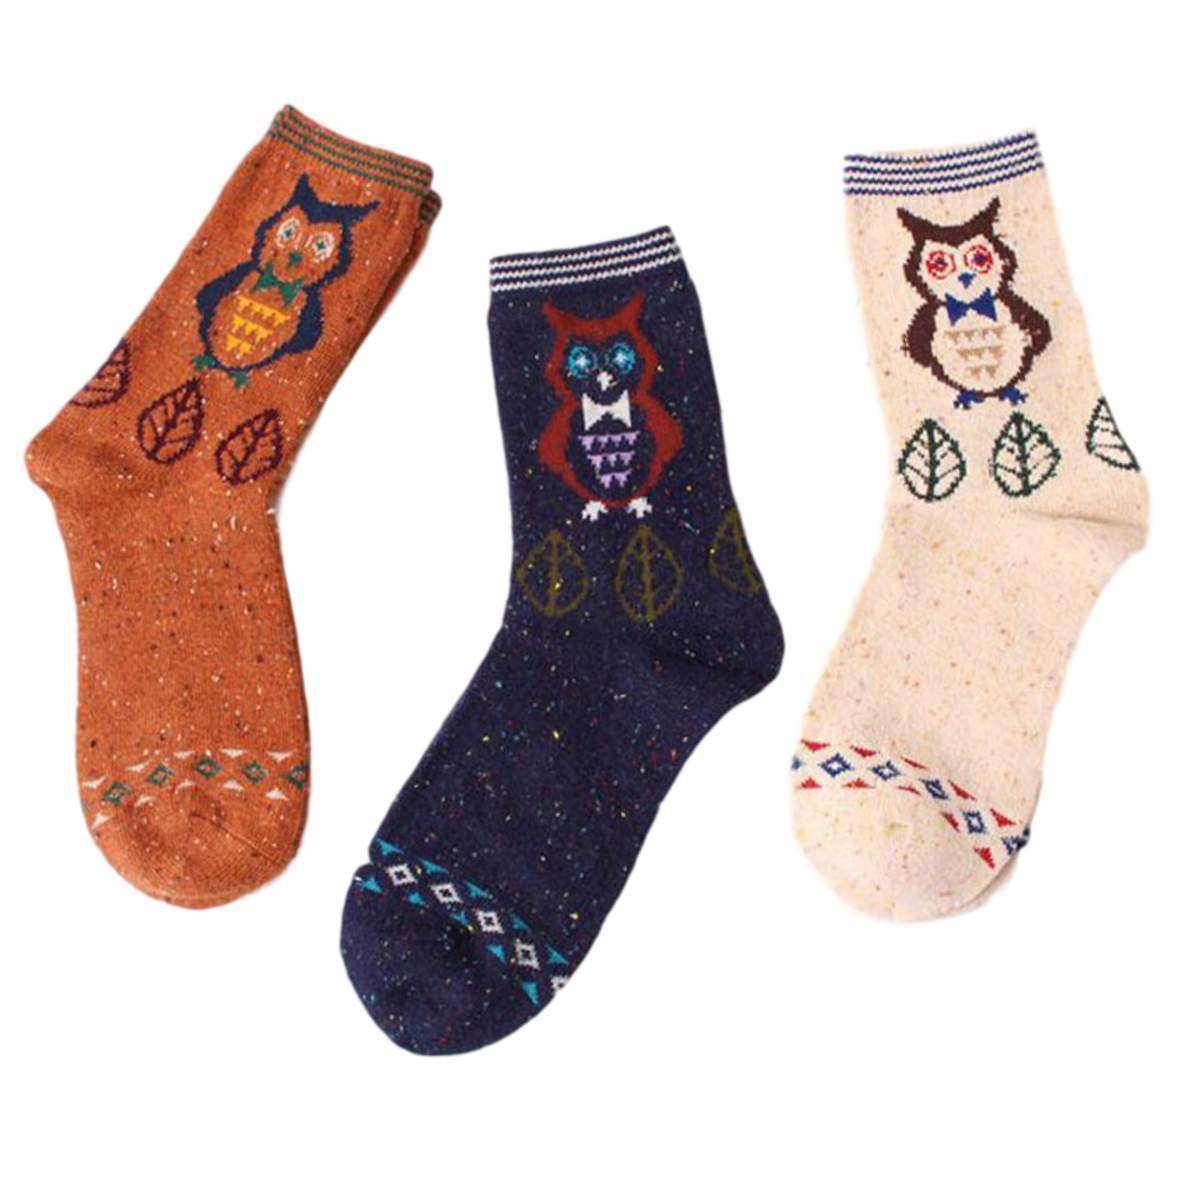 FOREST OWL LIGHTWEIGHT WOOL BLEND SOCKS - Best Compression Socks Sale